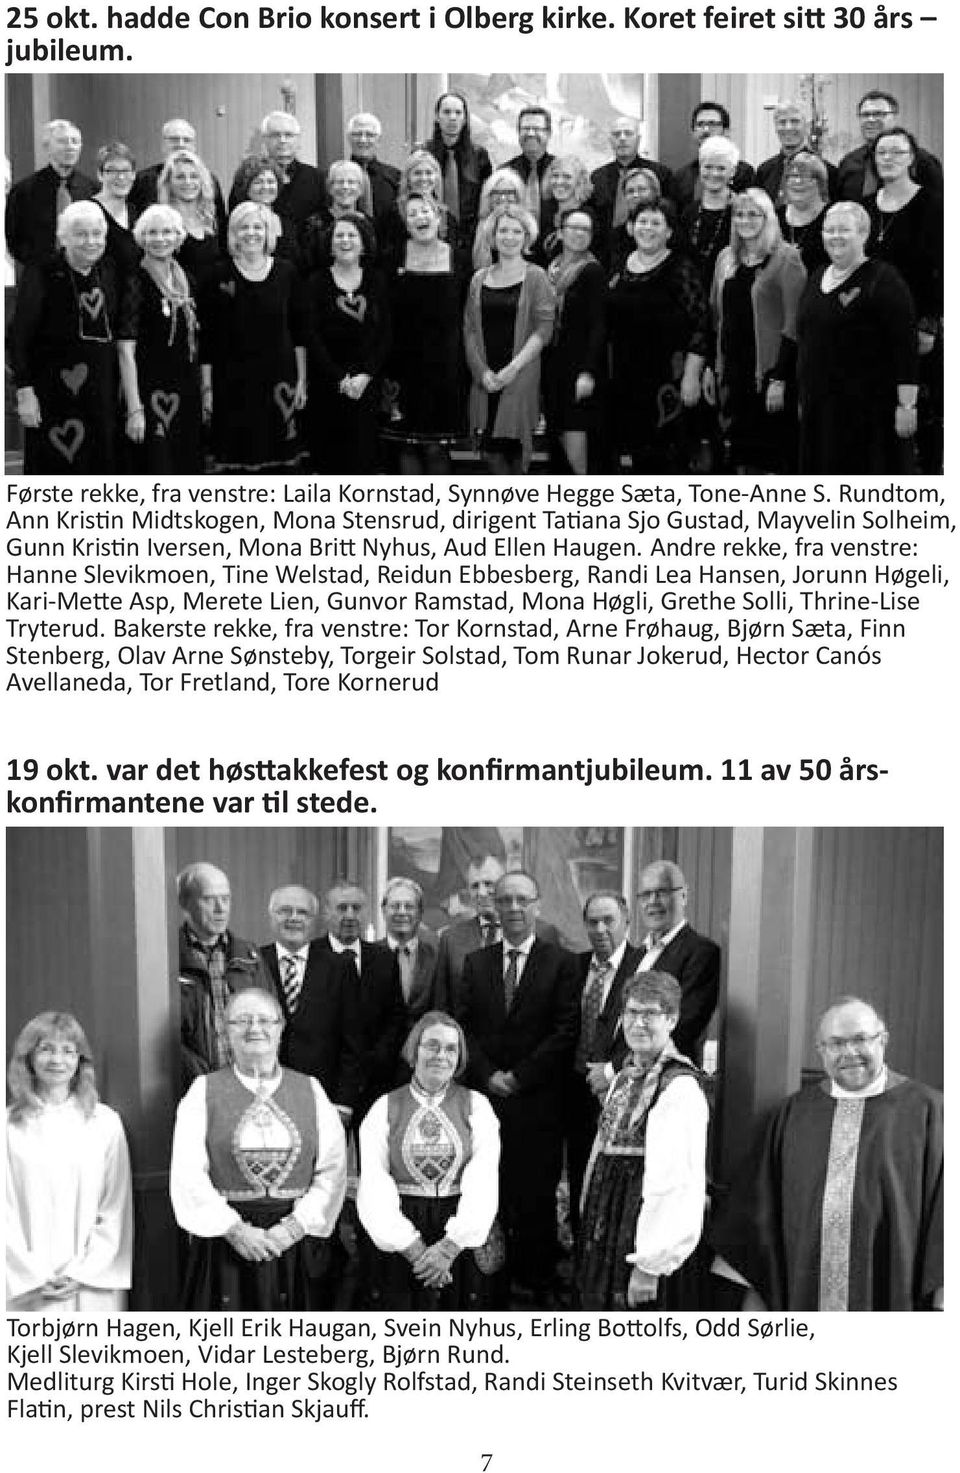 Andre rekke, fra venstre: Hanne Slevikmoen, Tine Welstad, Reidun Ebbesberg, Randi Lea Hansen, Jorunn Høgeli, Kari-Mette Asp, Merete Lien, Gunvor Ramstad, Mona Høgli, Grethe Solli, Thrine-Lise